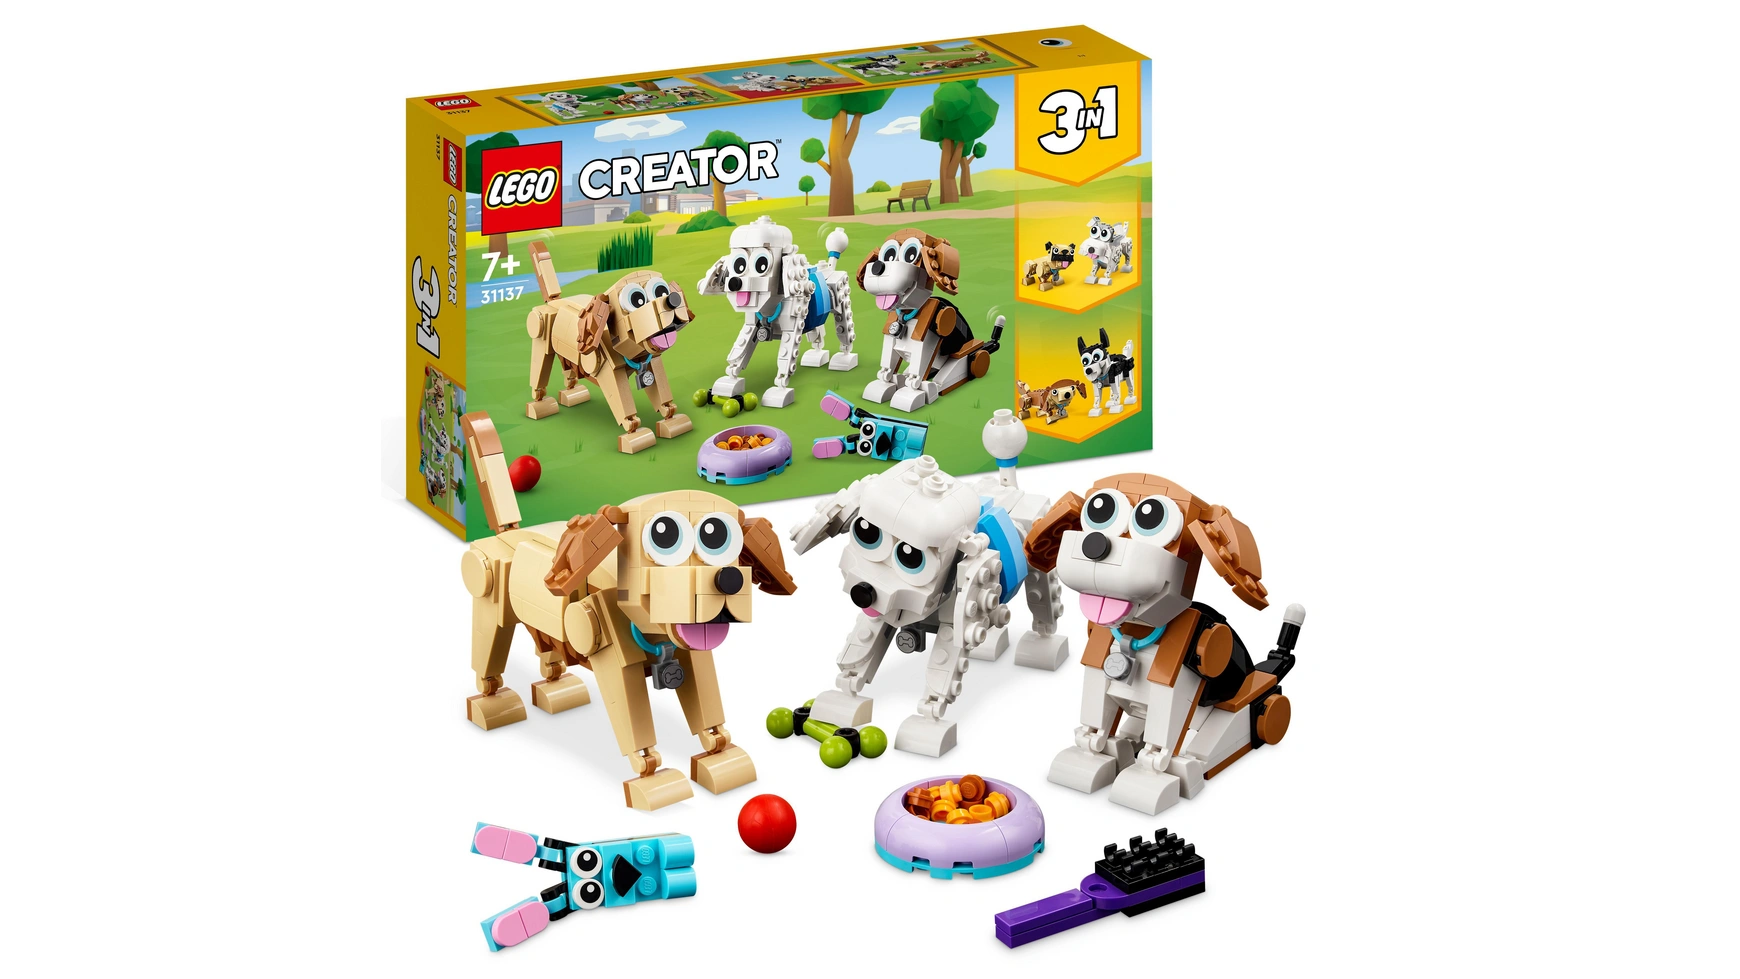 Lego Creator 3in1 Набор игрушек с милыми собаками и животными конструктор lego creator лондонский автобус 1686 дет 10258